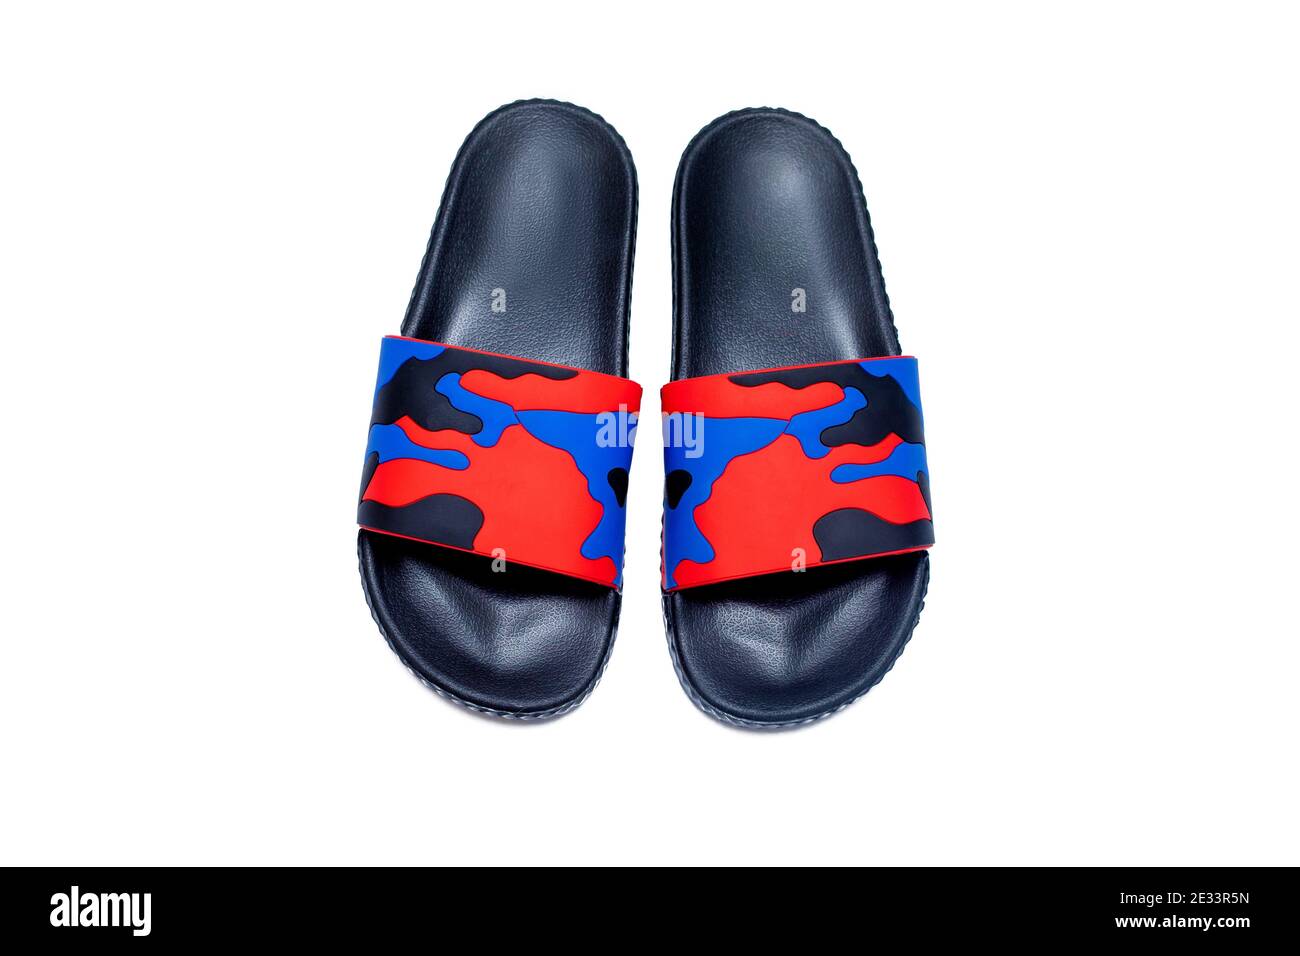 trendy slide sandal red blue black military slipper isolated on white background Stock Photo